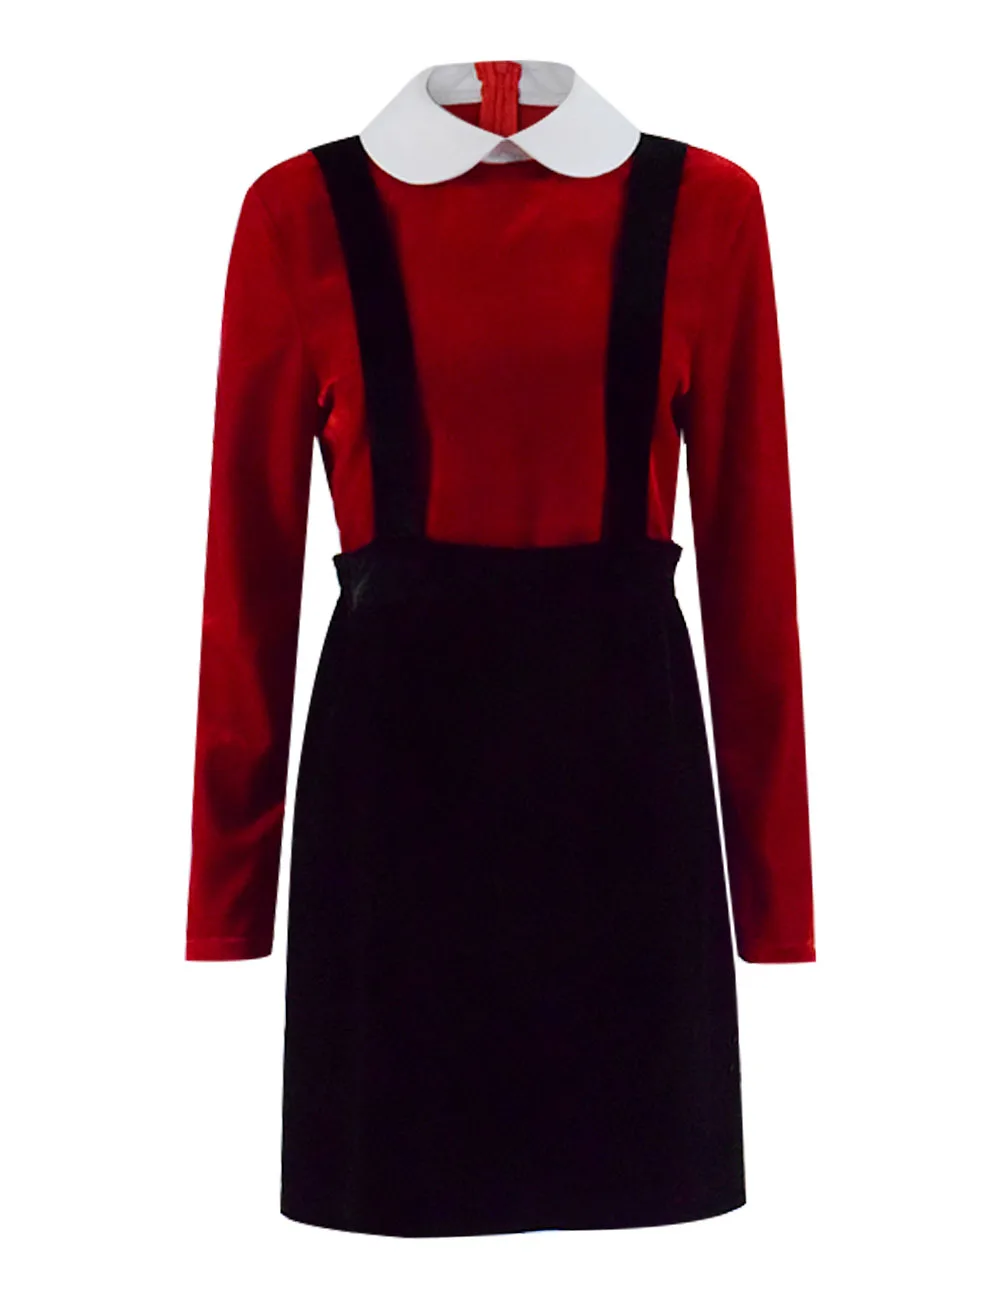 Cosdaddy Fleabag костюм для косплея красная бархатная футболка Топы юбка на подтяжках женское платье полный комплект